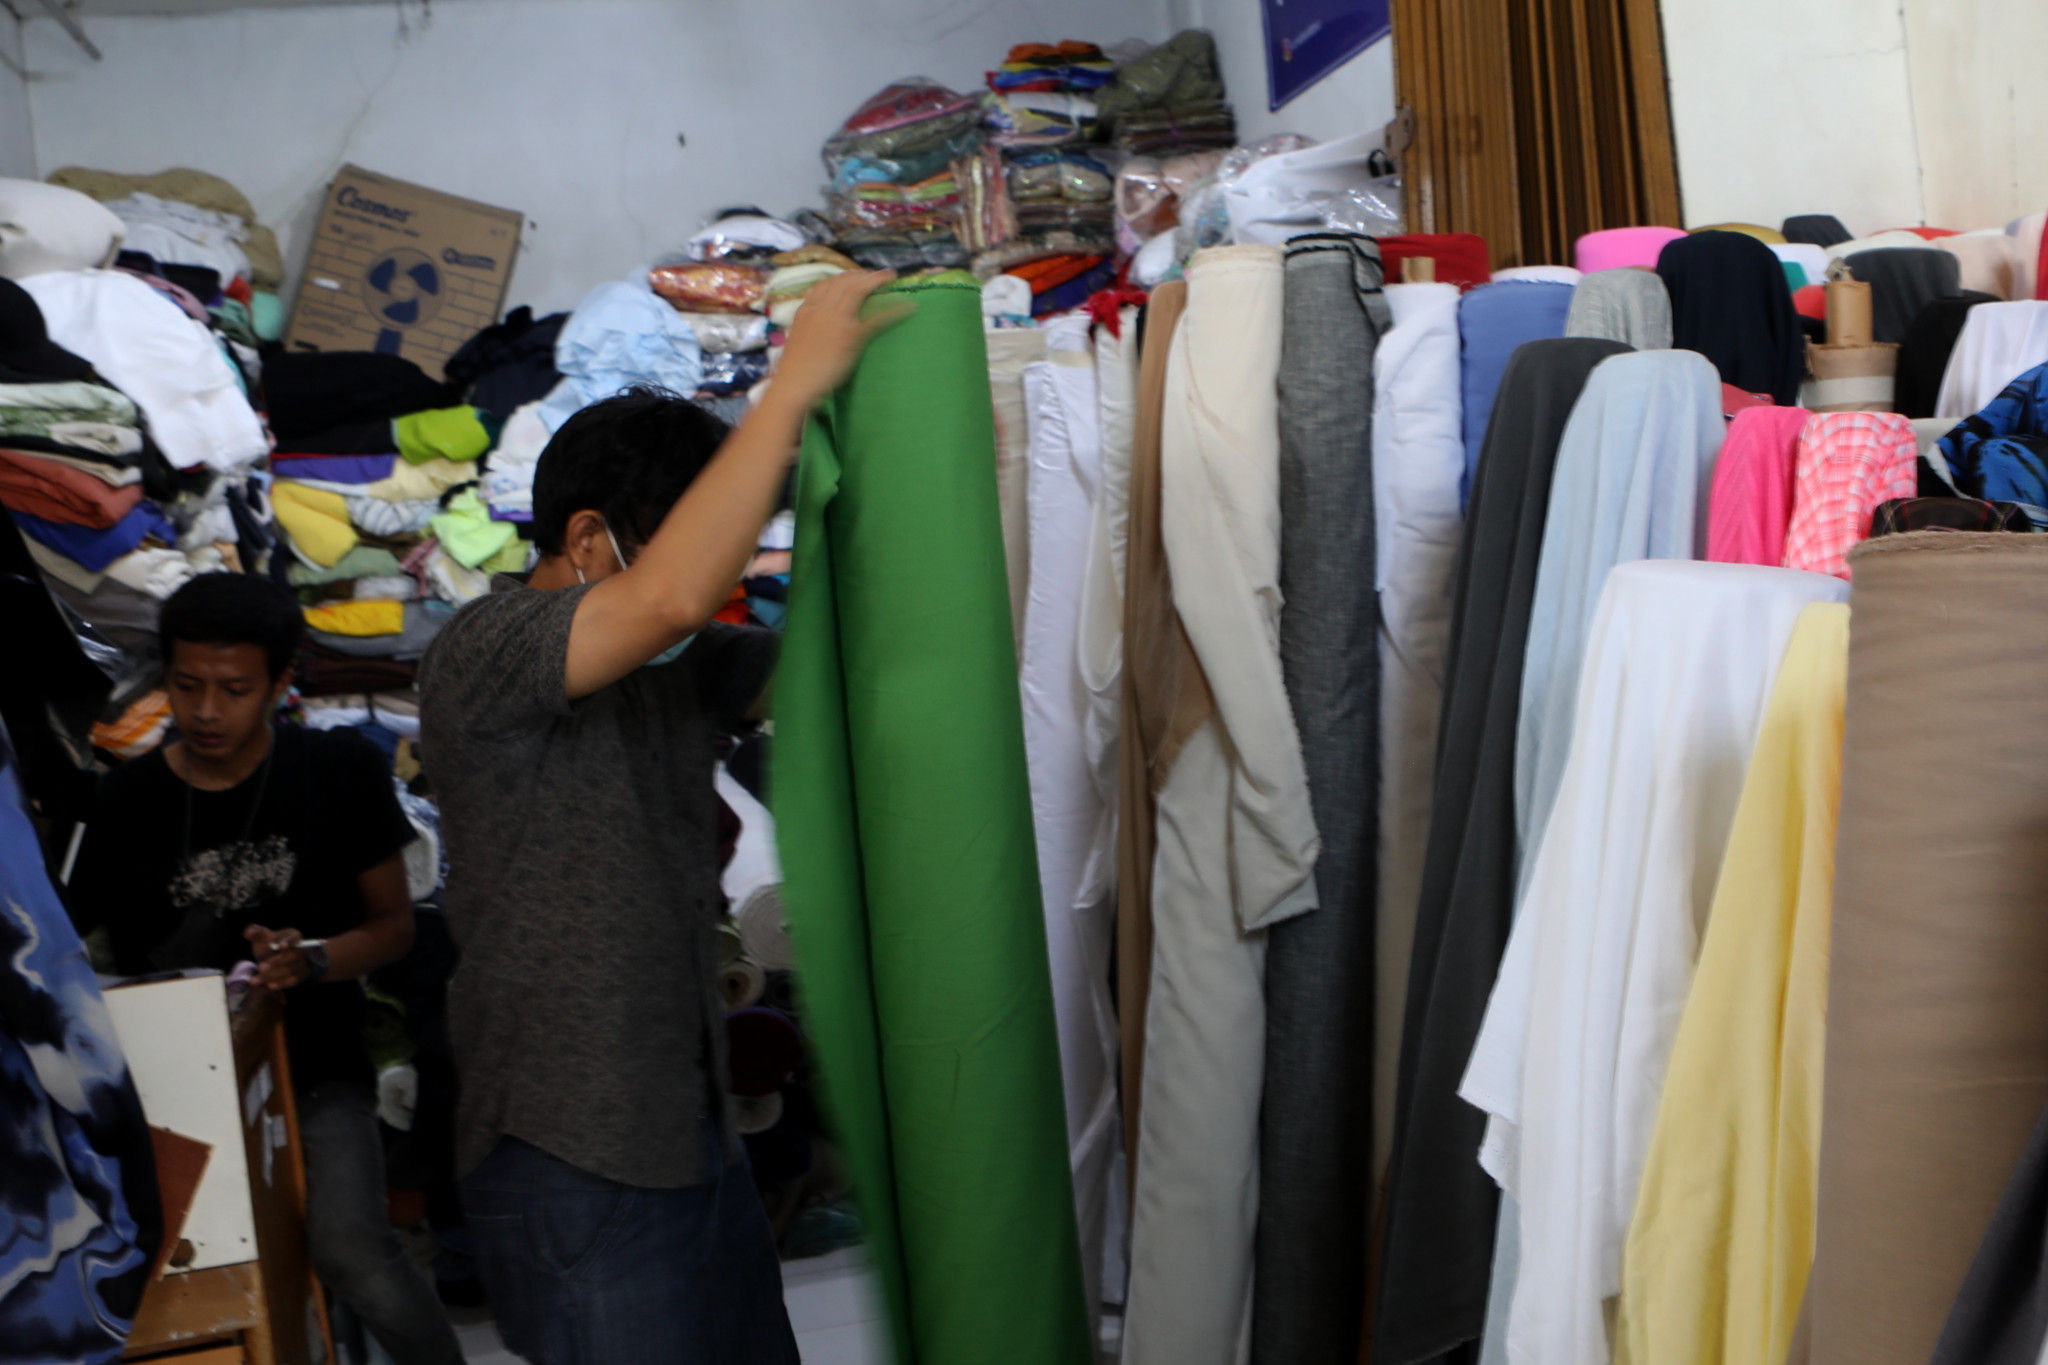 Pedangang menata bahan kain yang dijual di sentra grosir tekstil pasar Cipadu, Tangerang, Banten, Kamis, 14 Oktober 2021. Foto: Ismail Pohan/TrenAsia